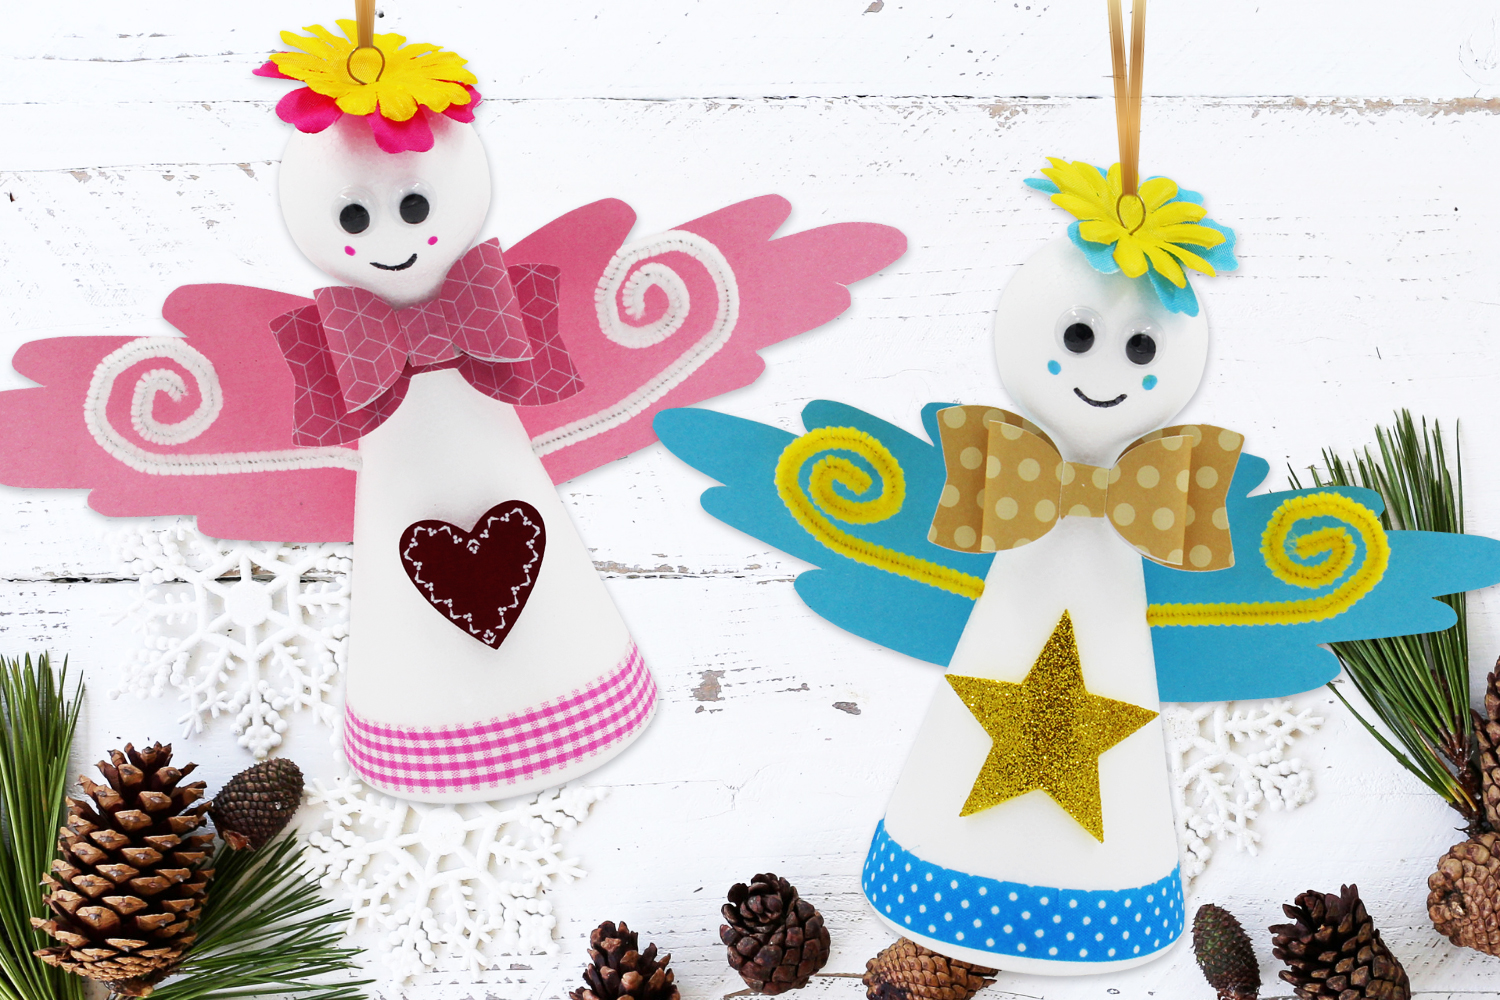 Ange de Noël en macramé - Articles décoratifs et accessoires